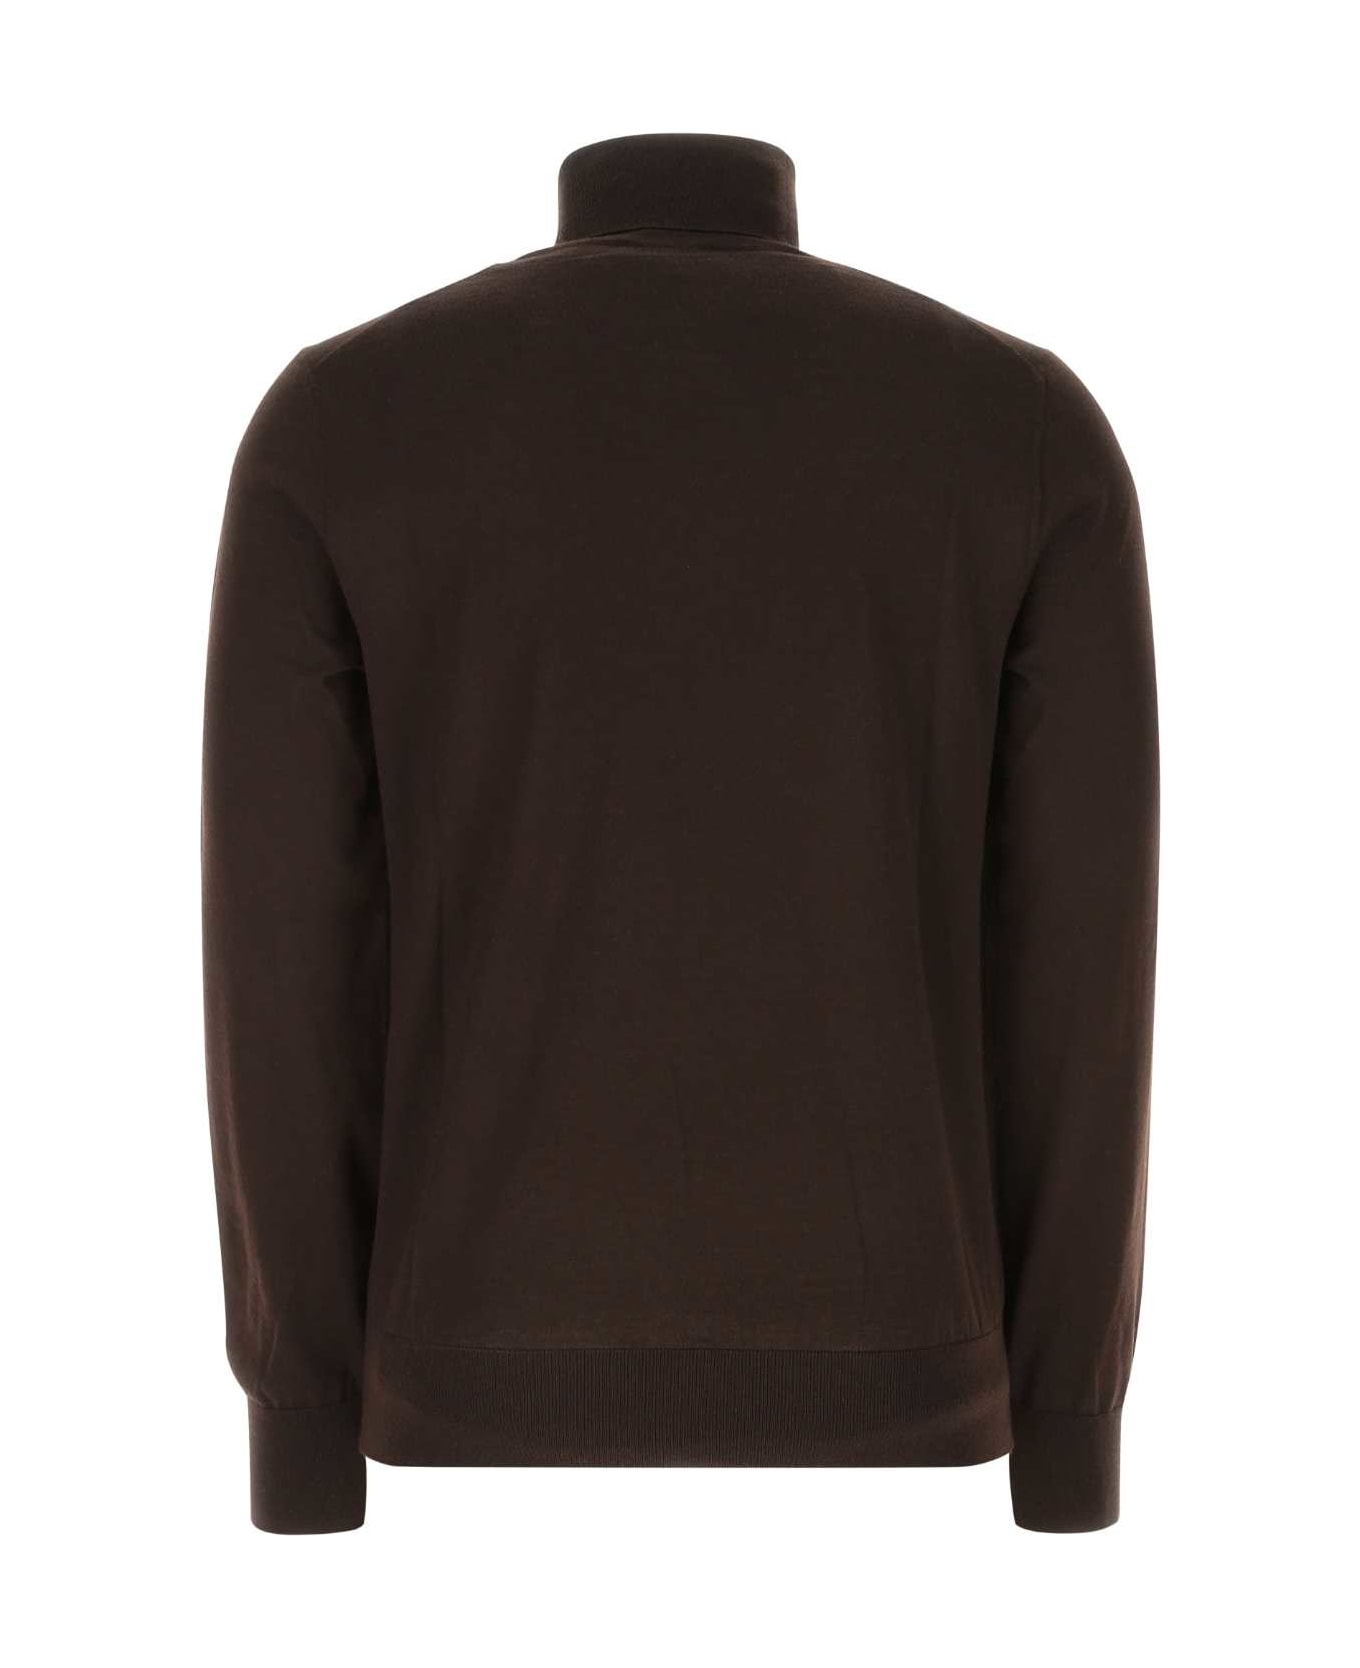 Dolce & Gabbana Dark Brown Cashmere Blend Sweater - M0682 ニットウェア